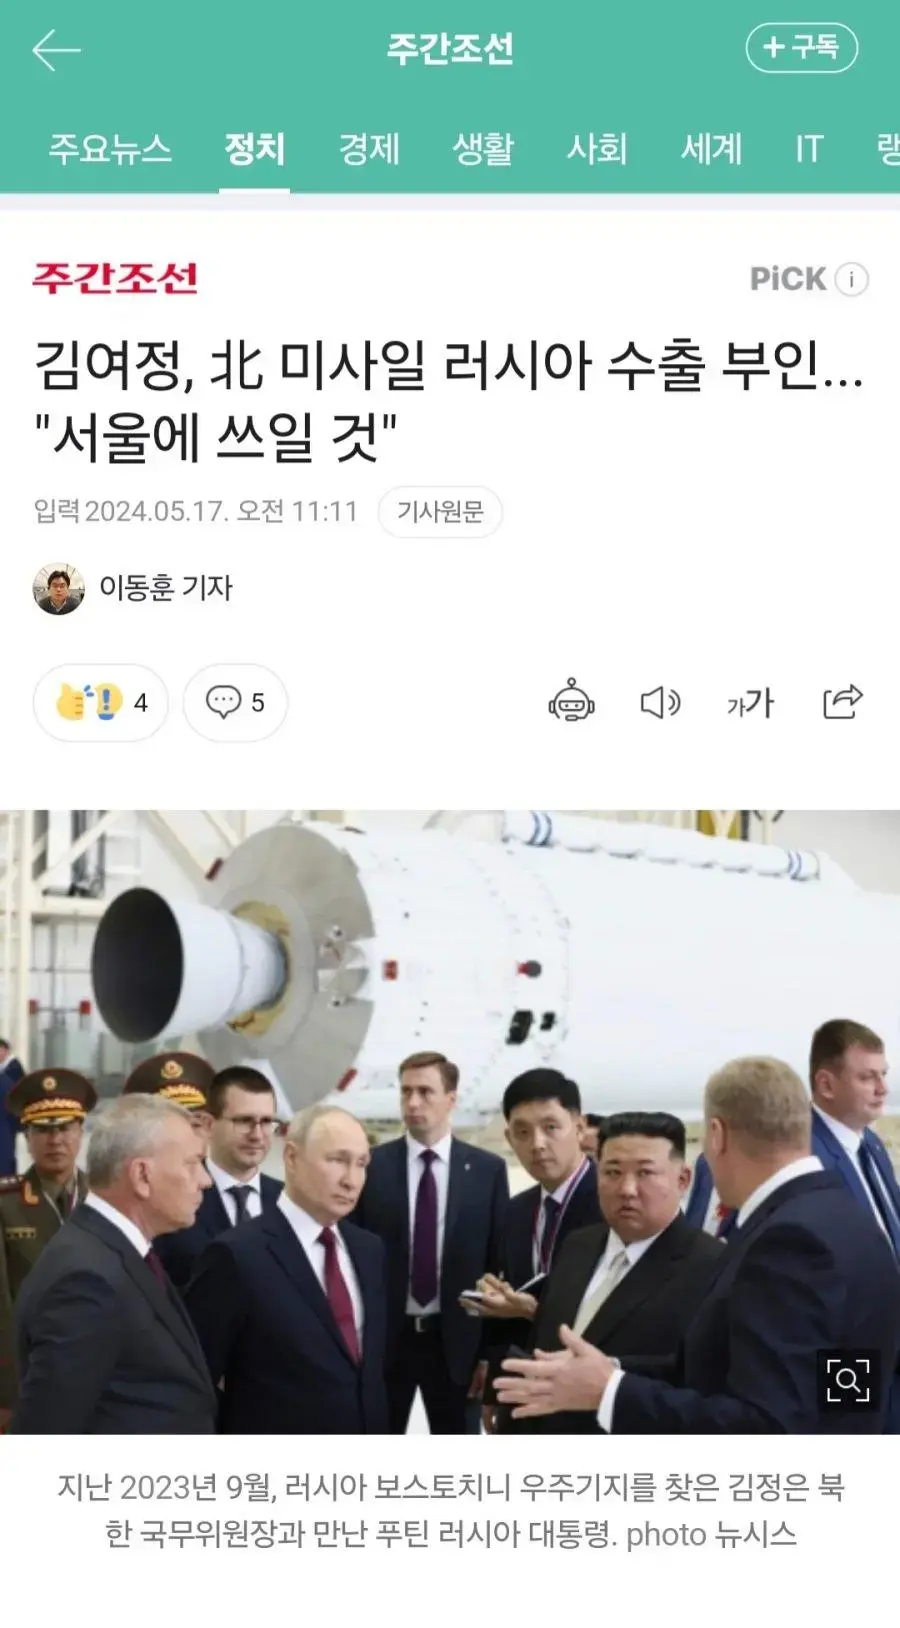 김여정, 北 미사일 러시아 수출 부인... 